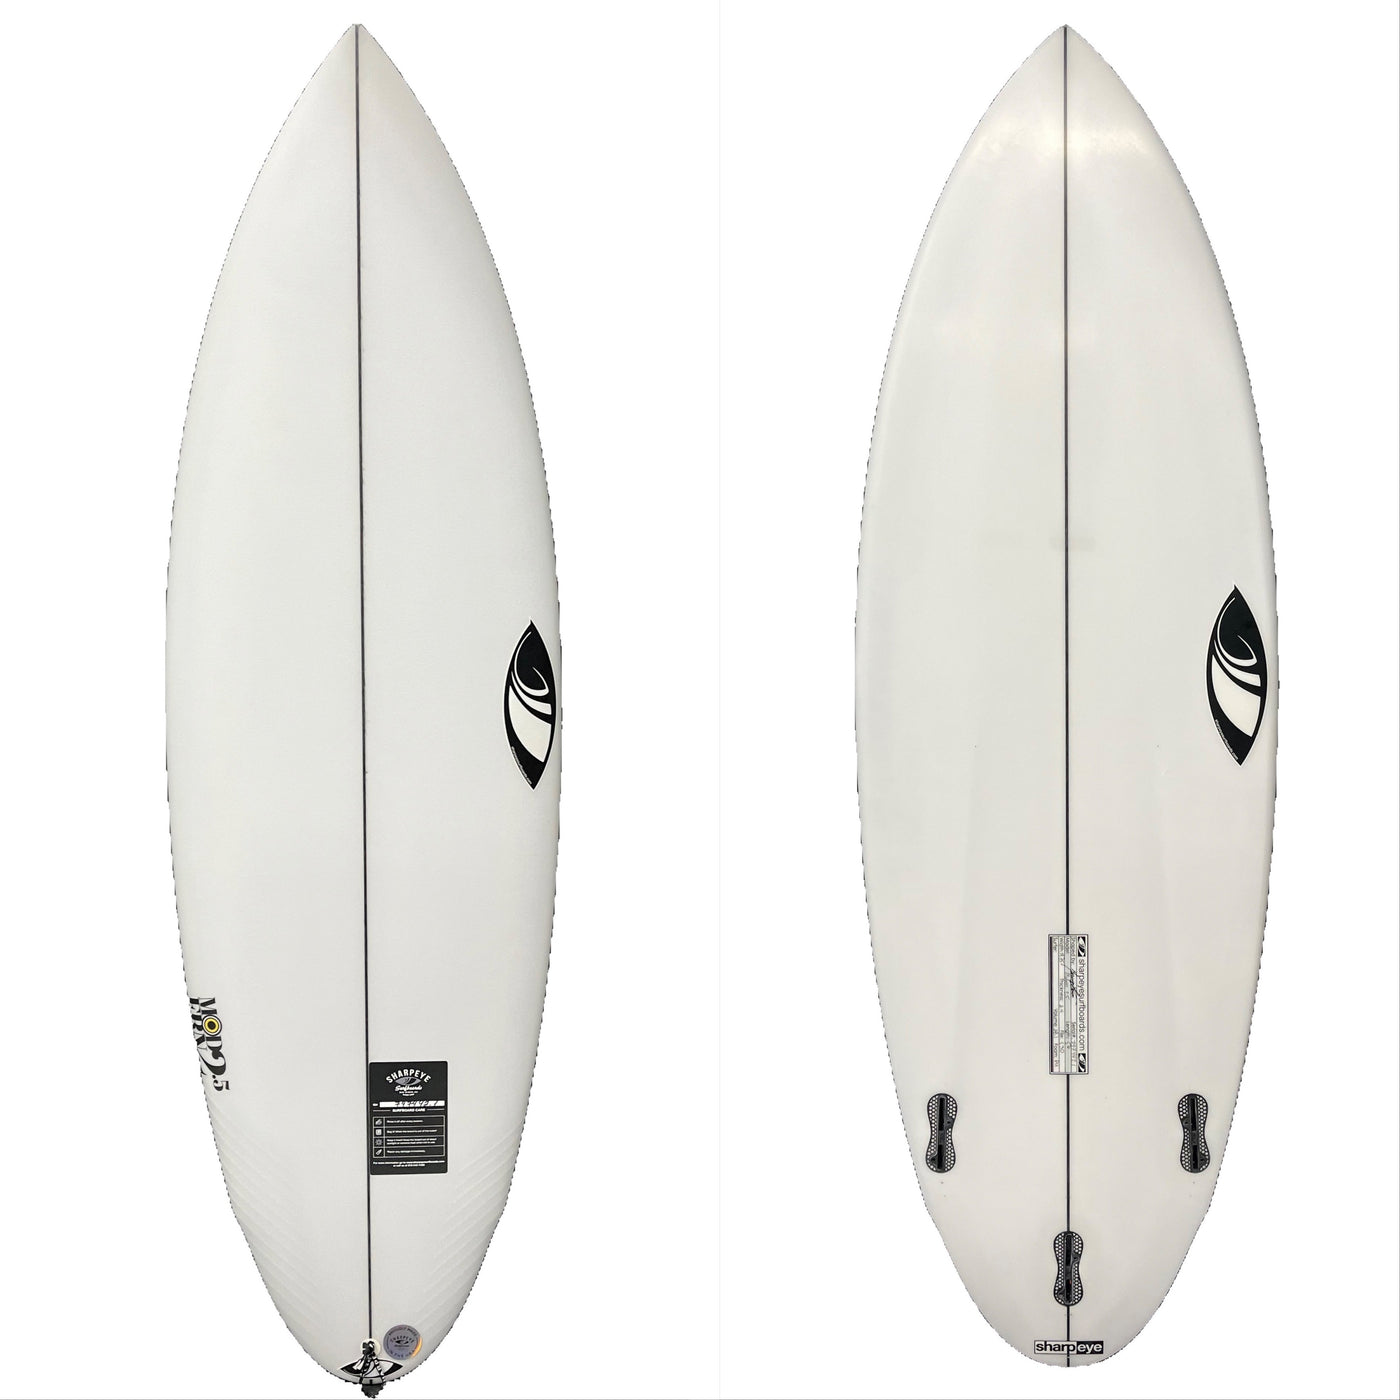 Sharp Eye 5'6" Modern 2.5 Surfboard